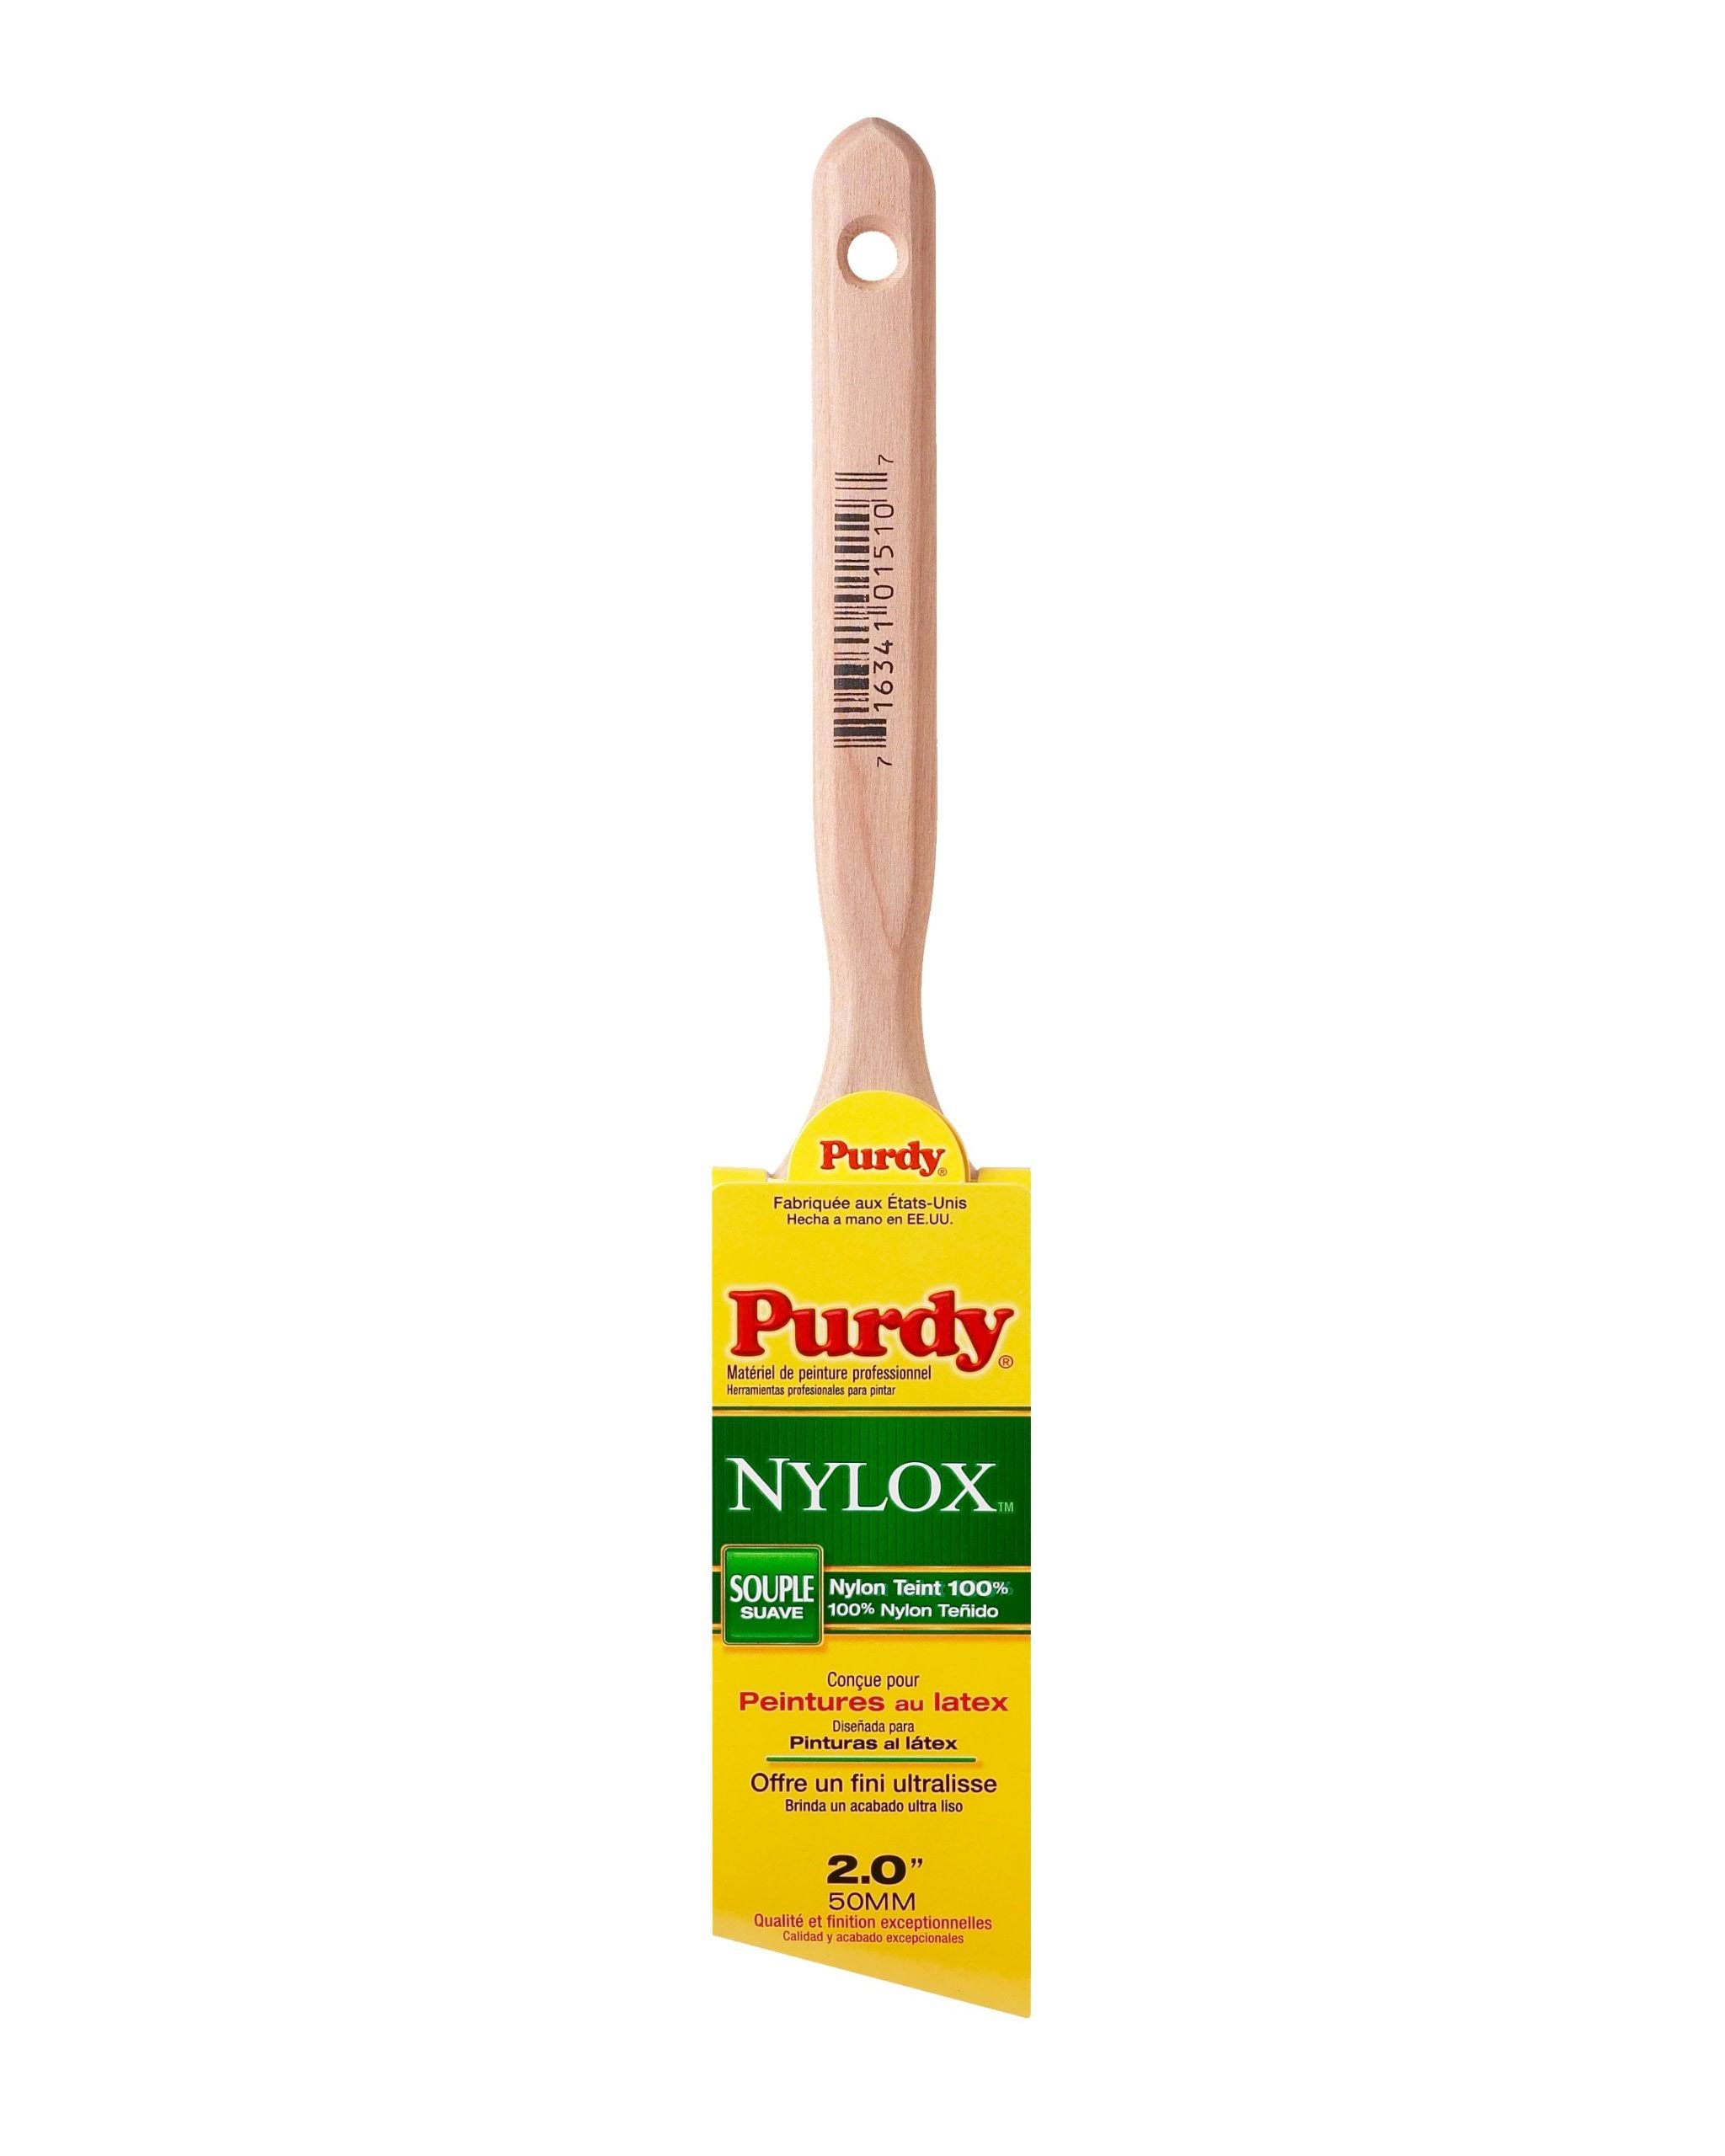 Purdy Nylox Glide Angled Sash Brush - 2 in